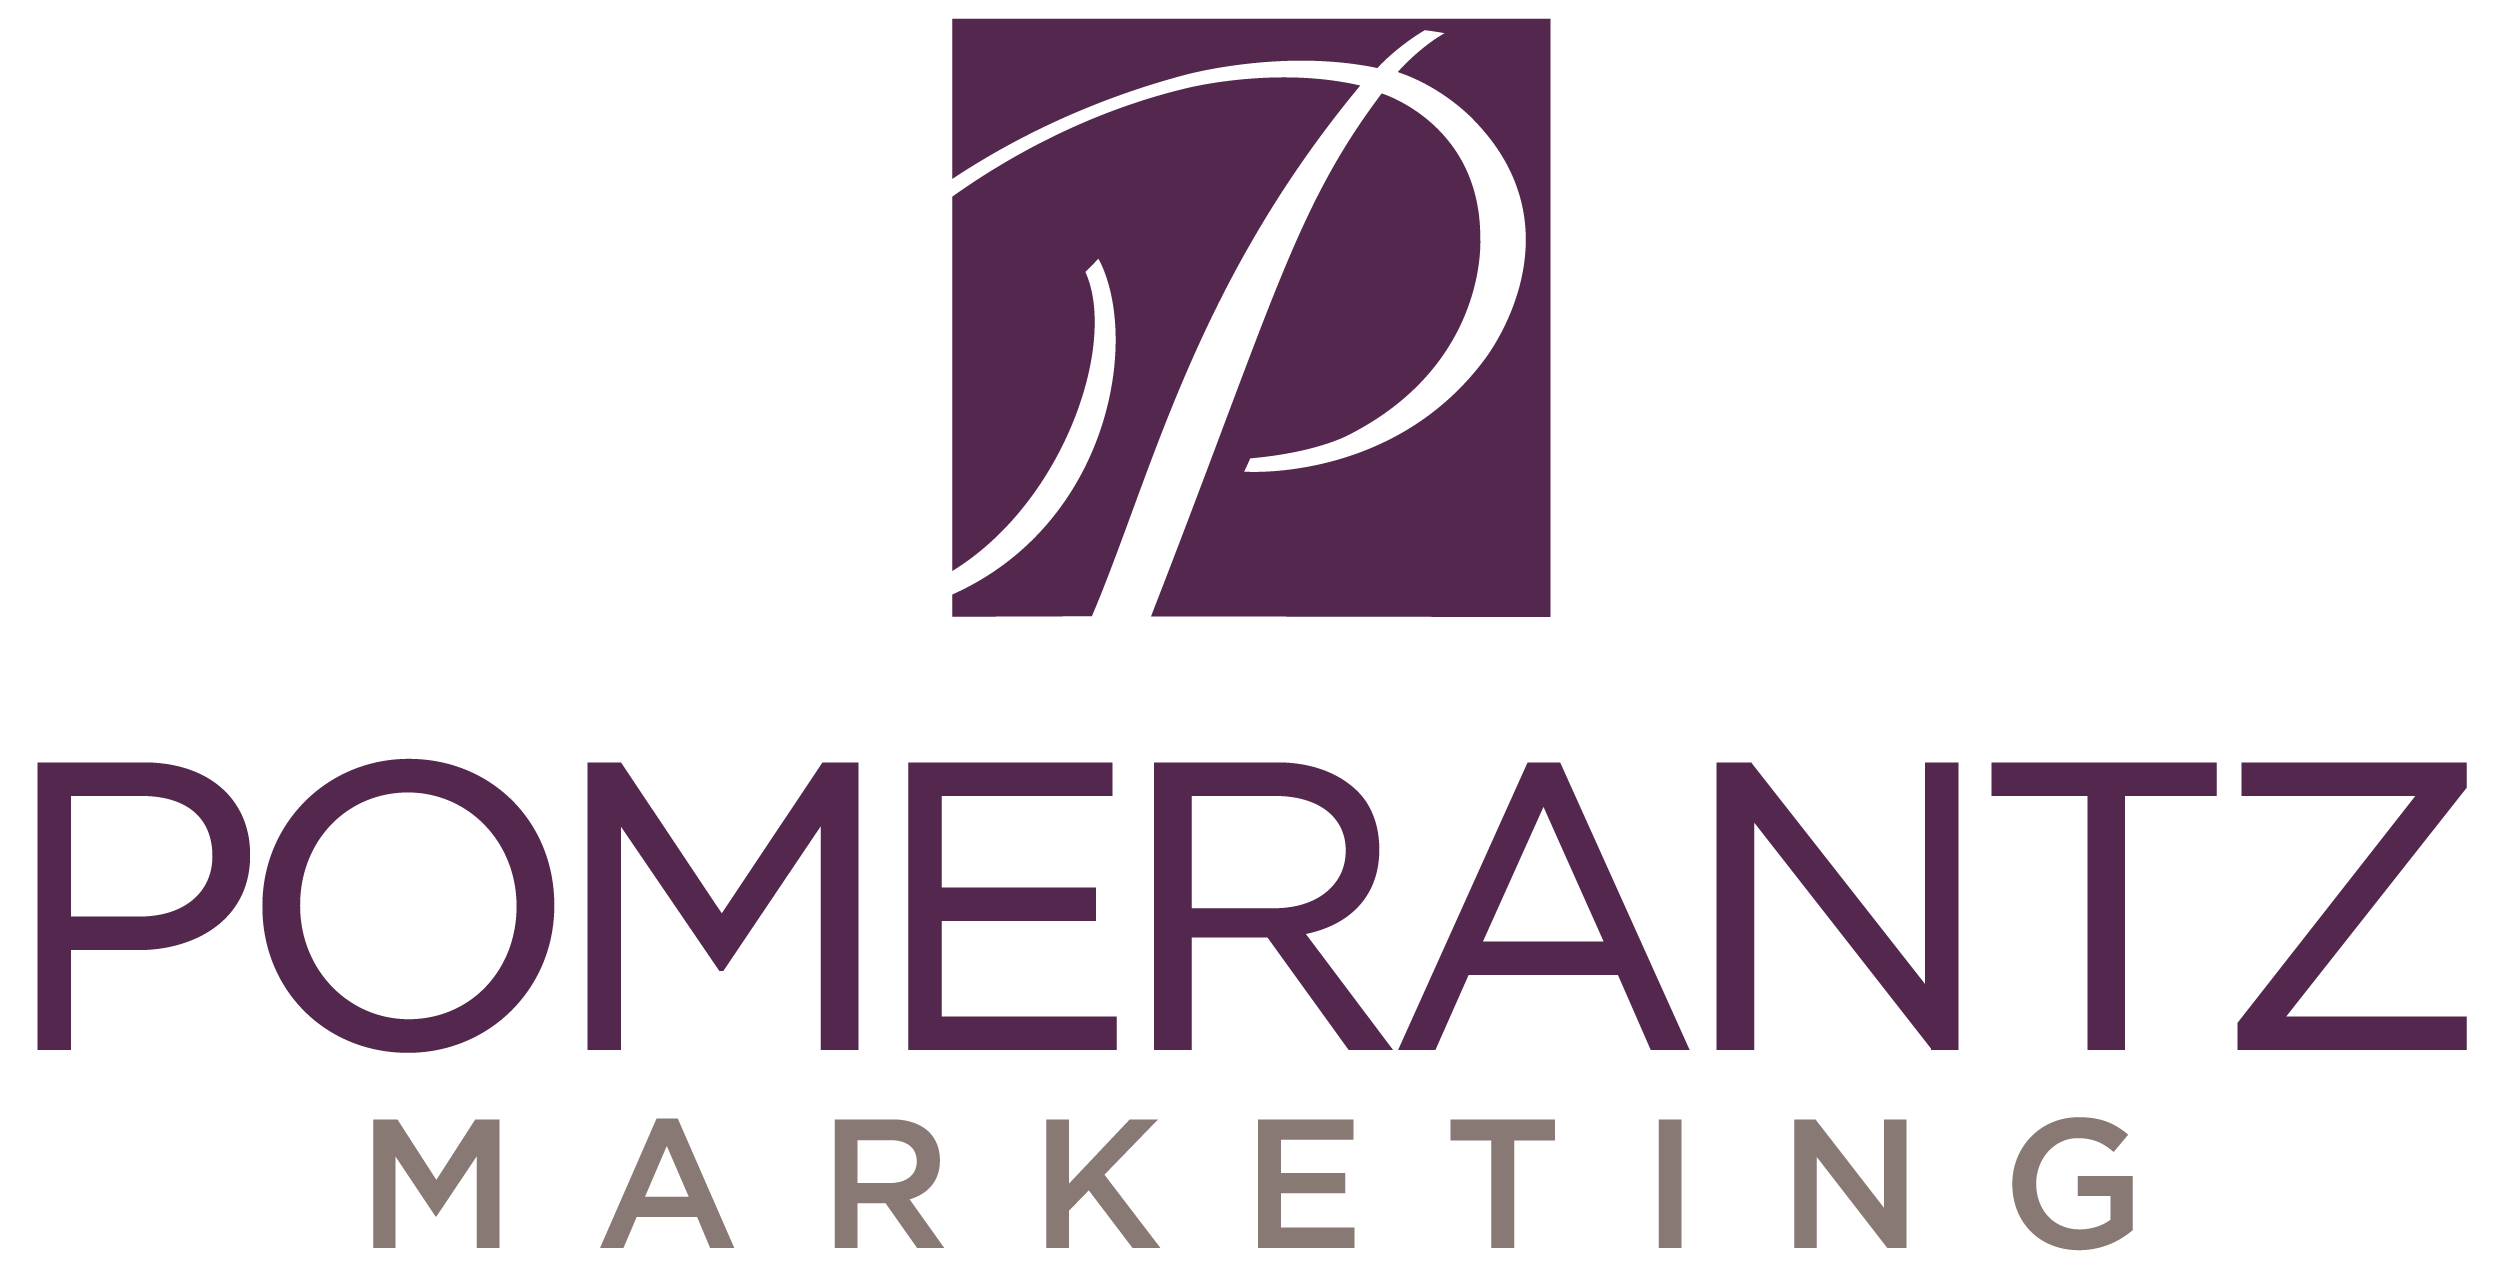 Pomerantz Marketing Logo